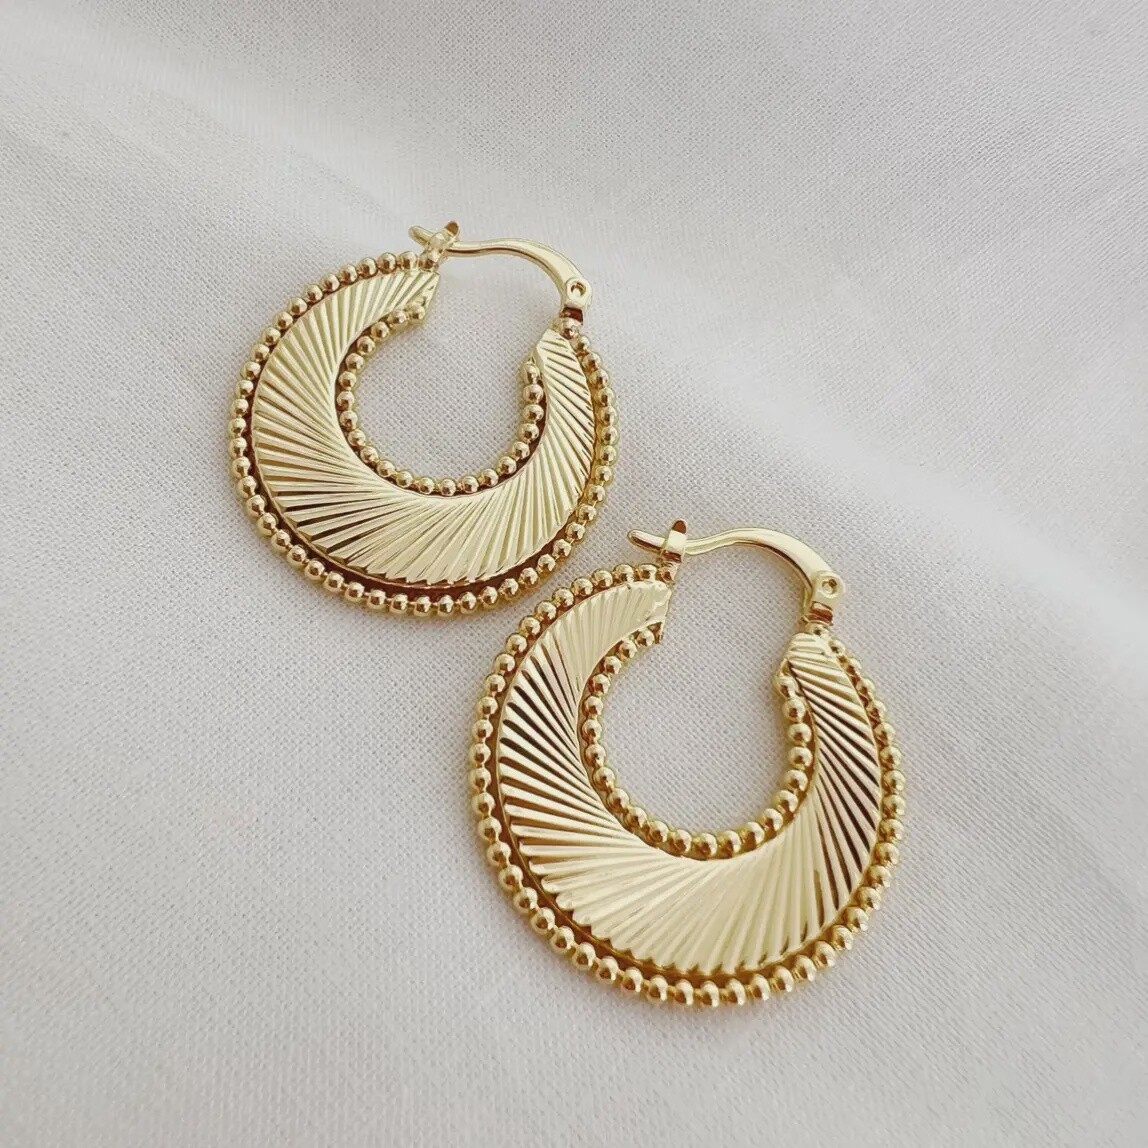 Freedom Sunburst Spiral Hoops Earrings Gold Filled